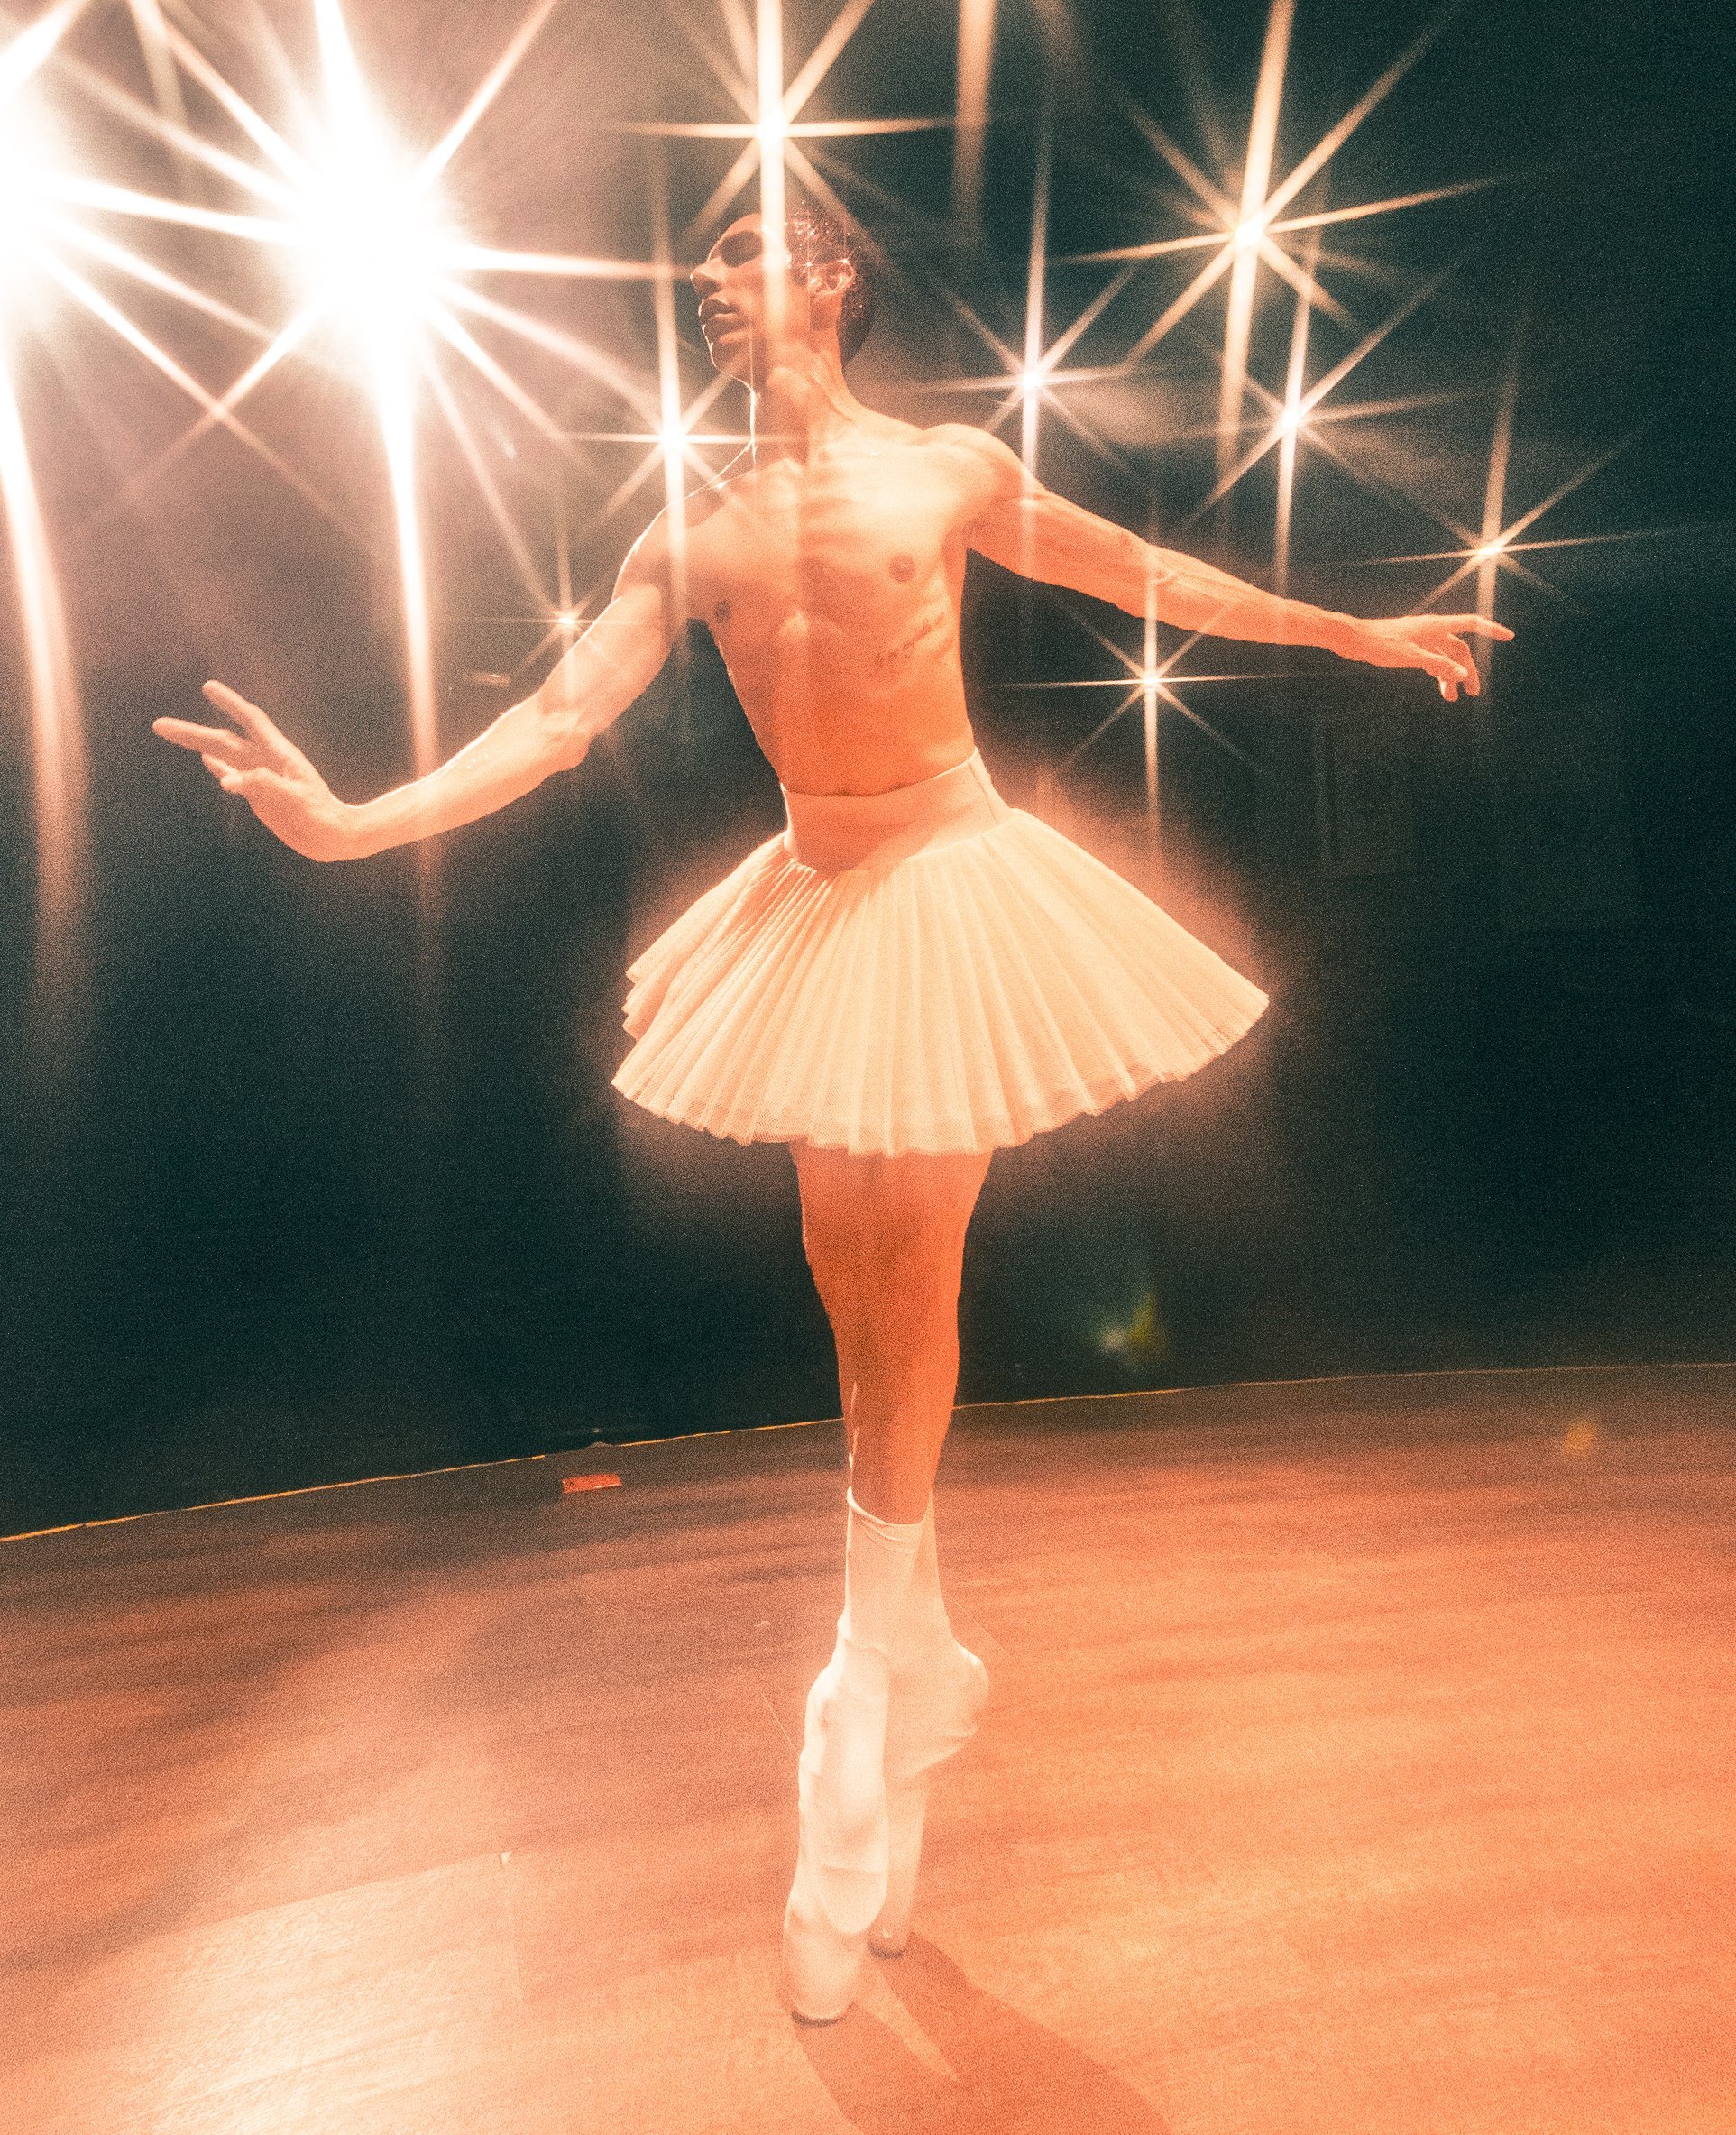 "Ballet in my dreams"